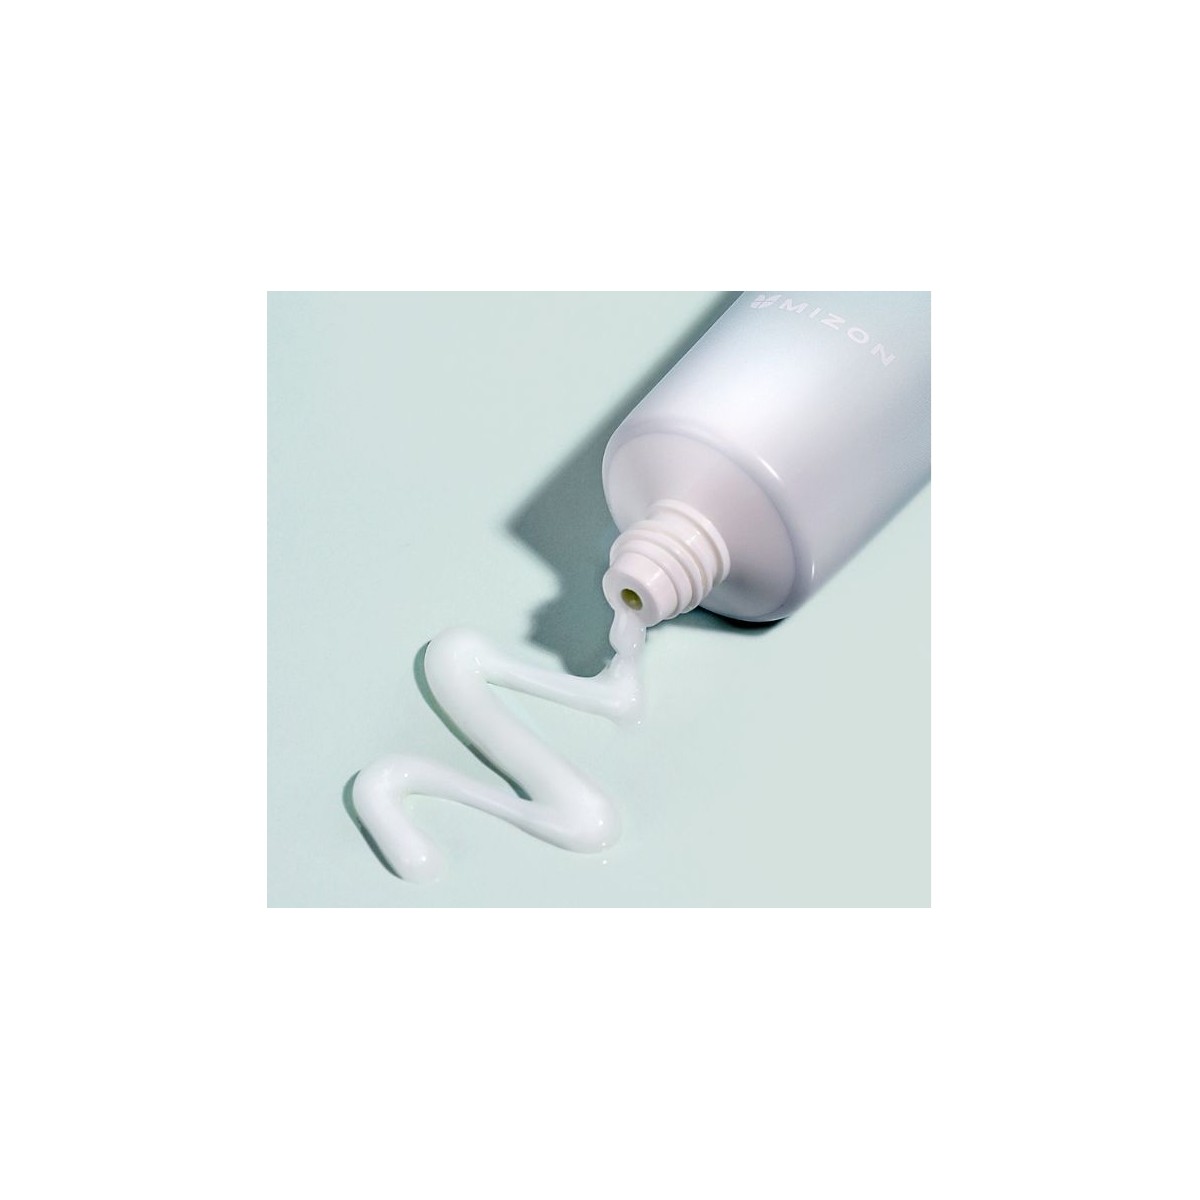 Emulsiones y Cremas al mejor precio: Mizon Cicaluronic Gel Treatment 50ml de Mizon en Skin Thinks - 